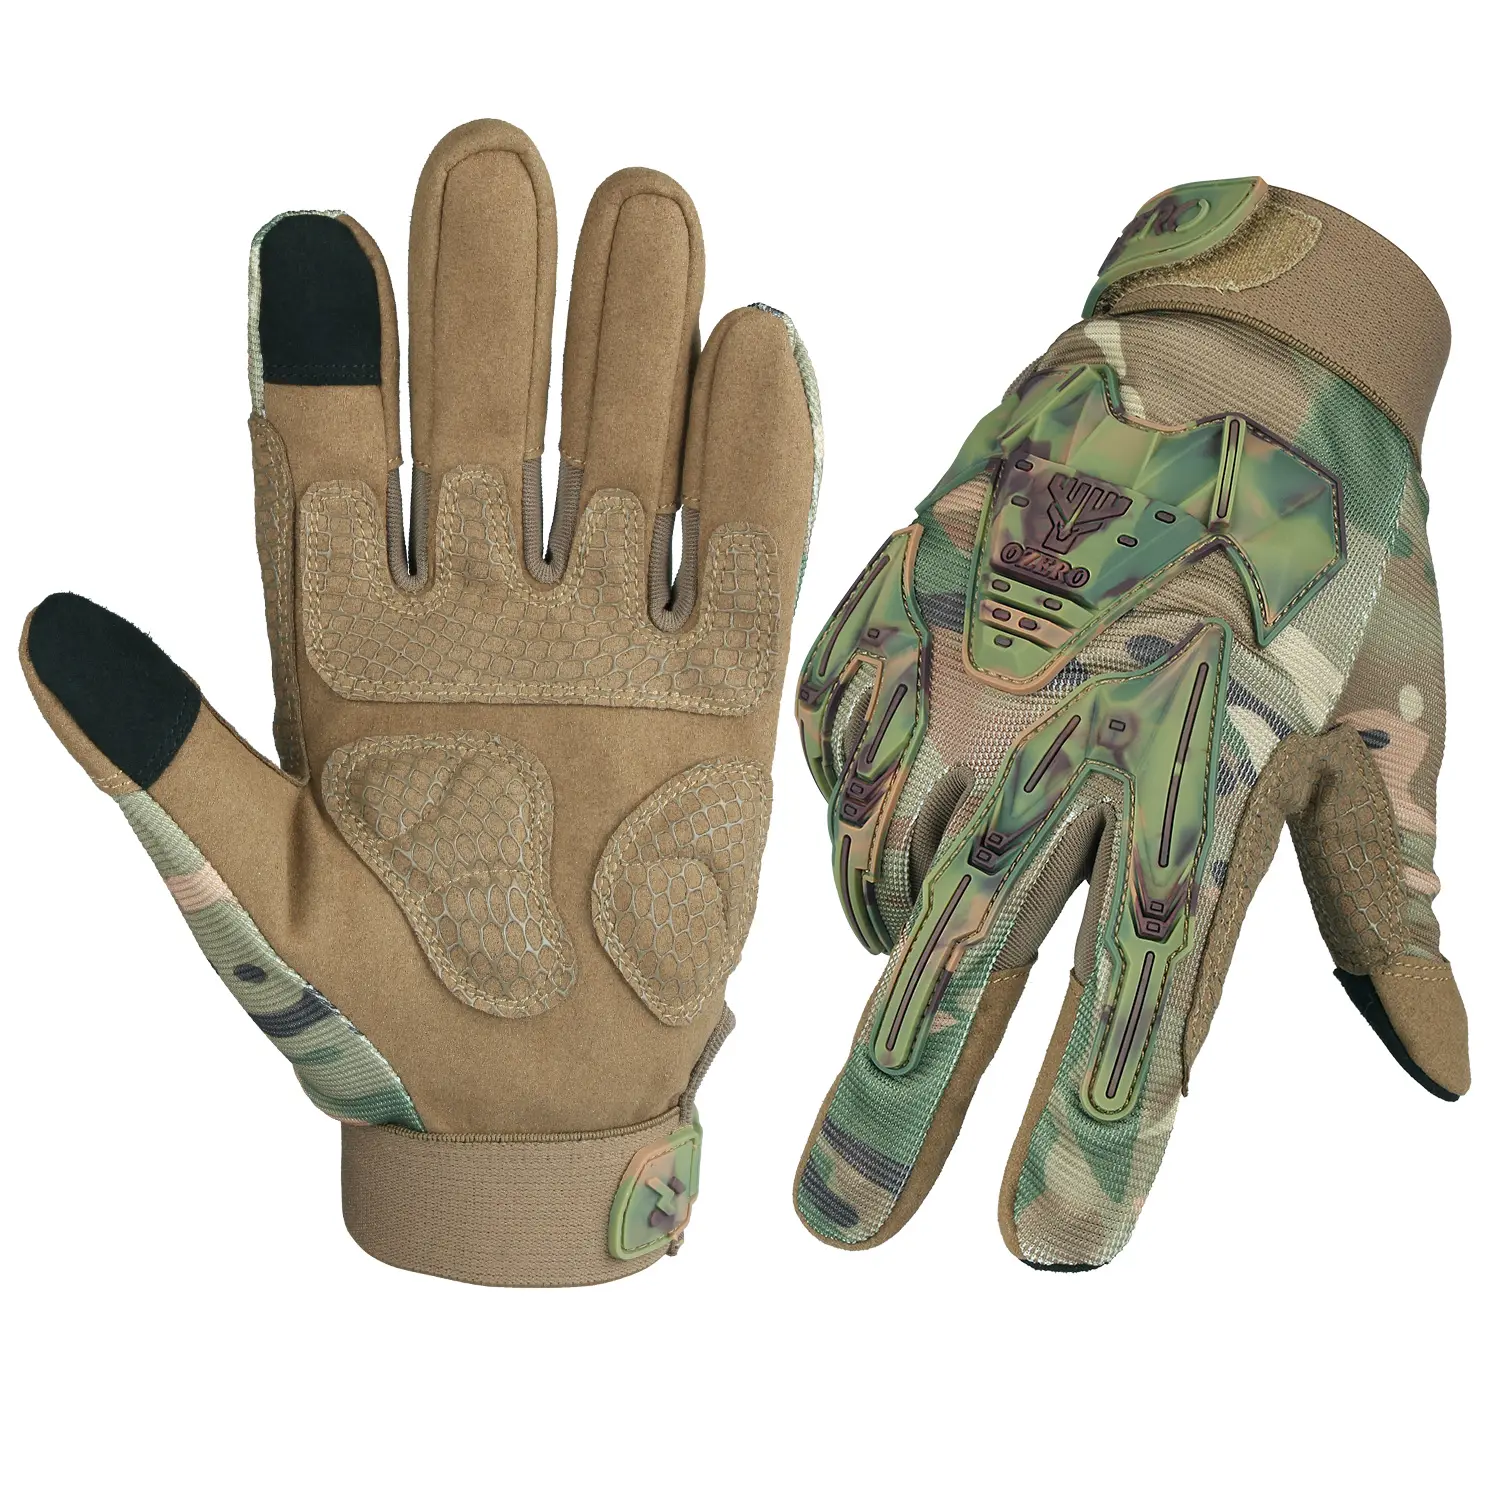 OZERO venta al por mayor guantes de caza al aire libre camuflaje táctico pantalla táctil antideslizante protección de manos